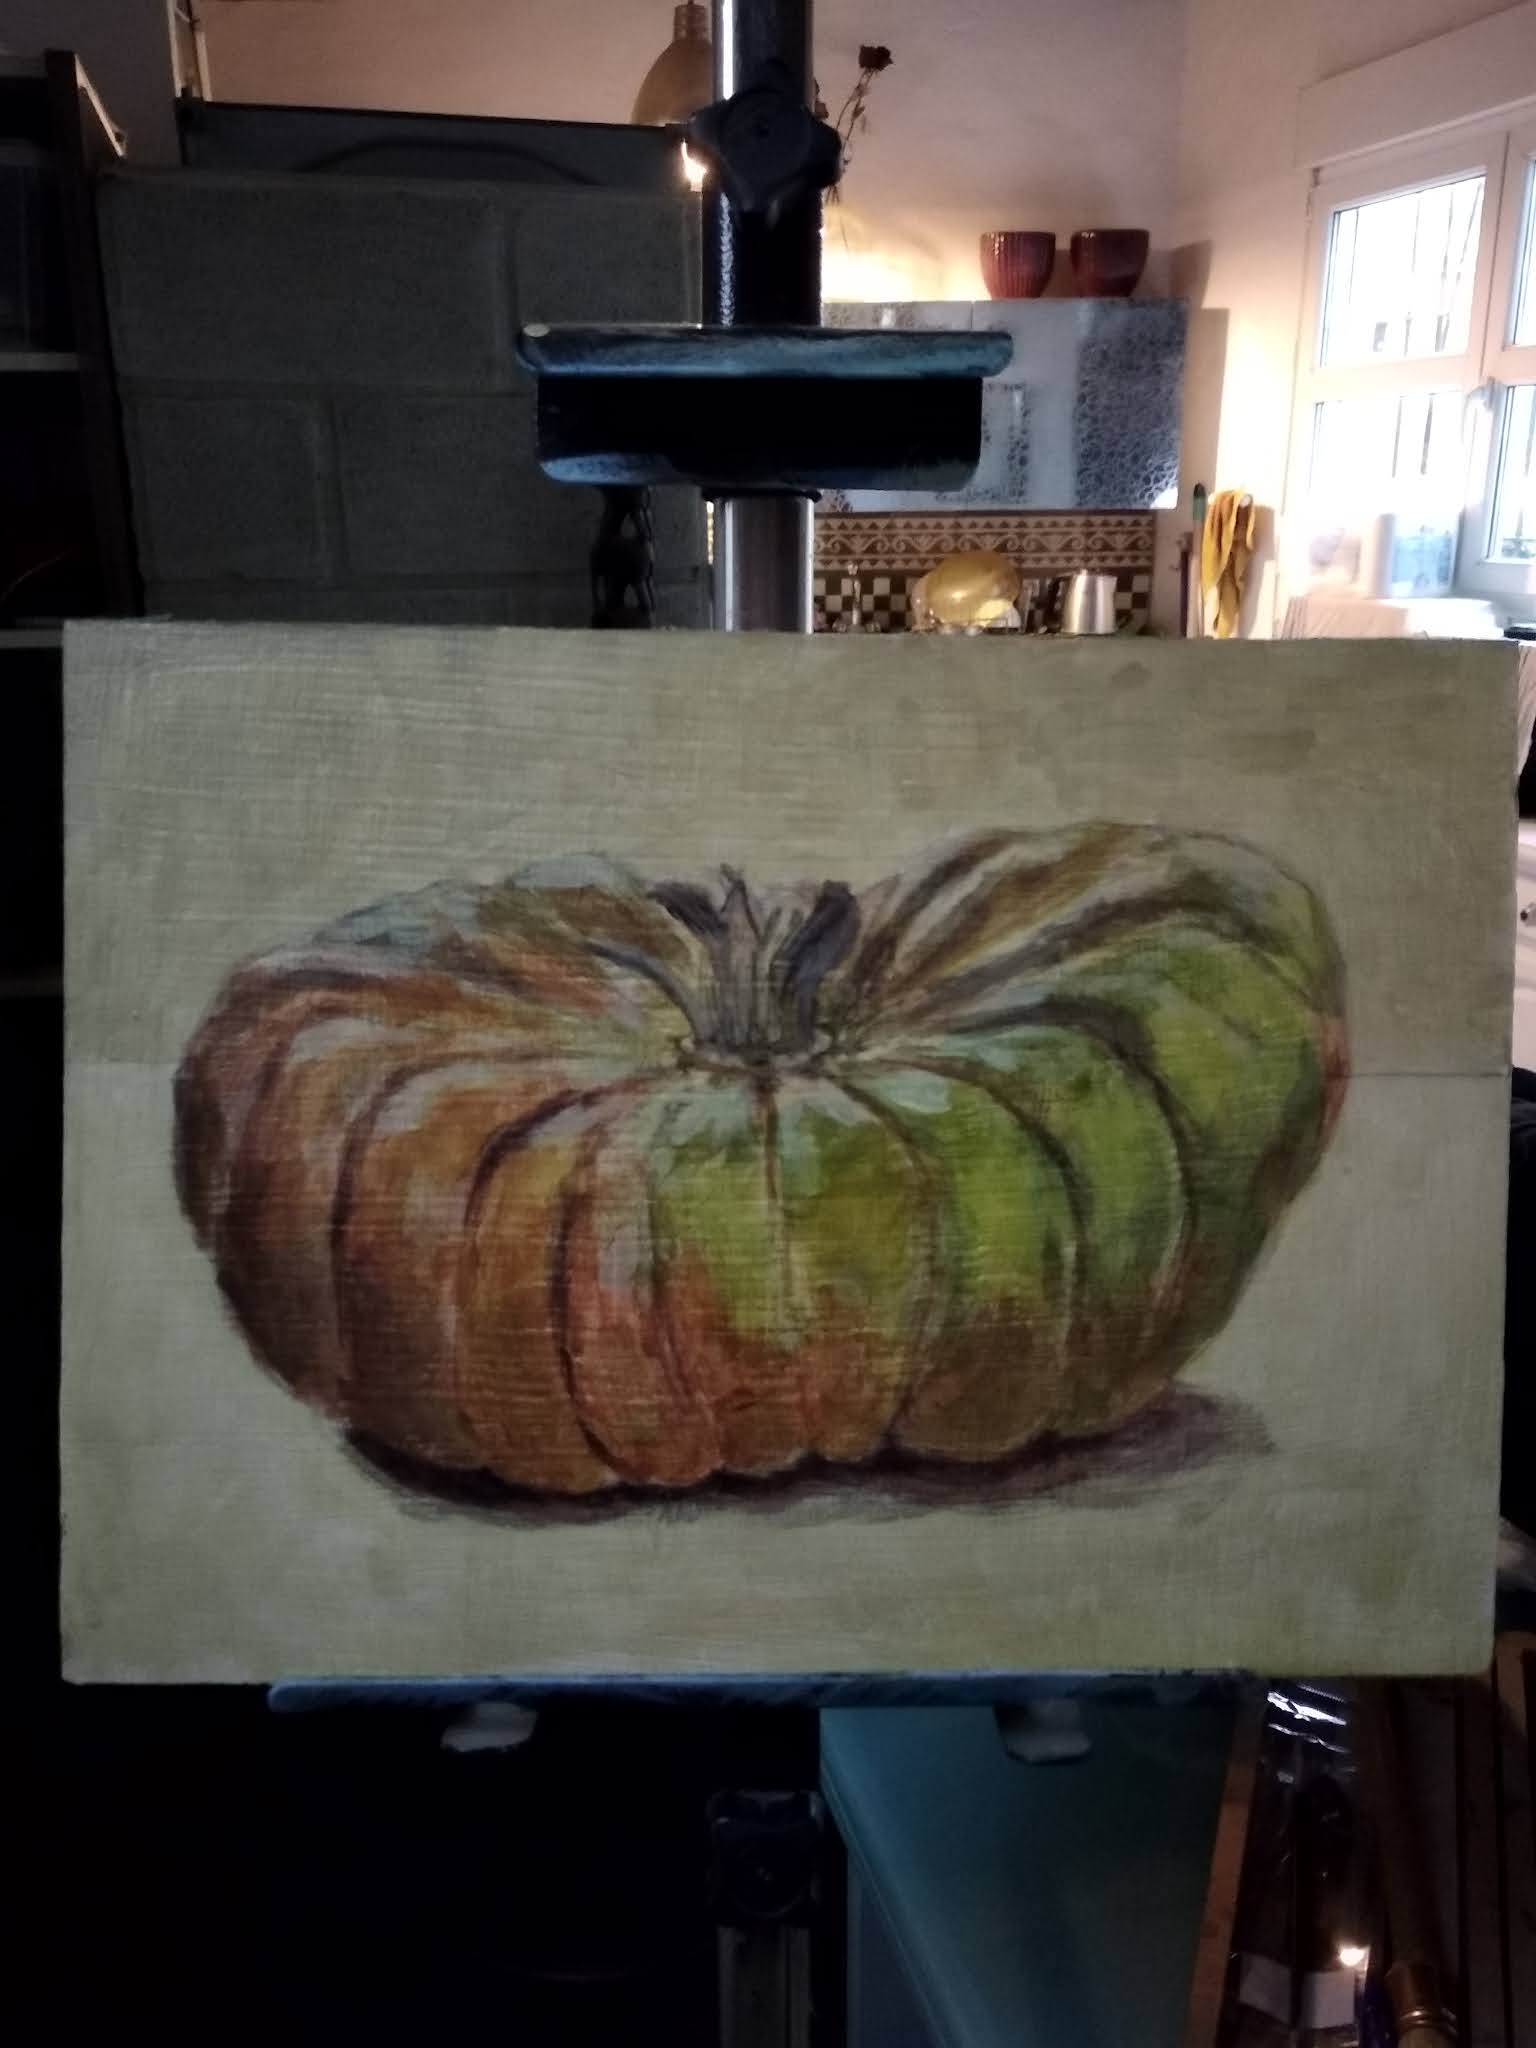 a pumpkin